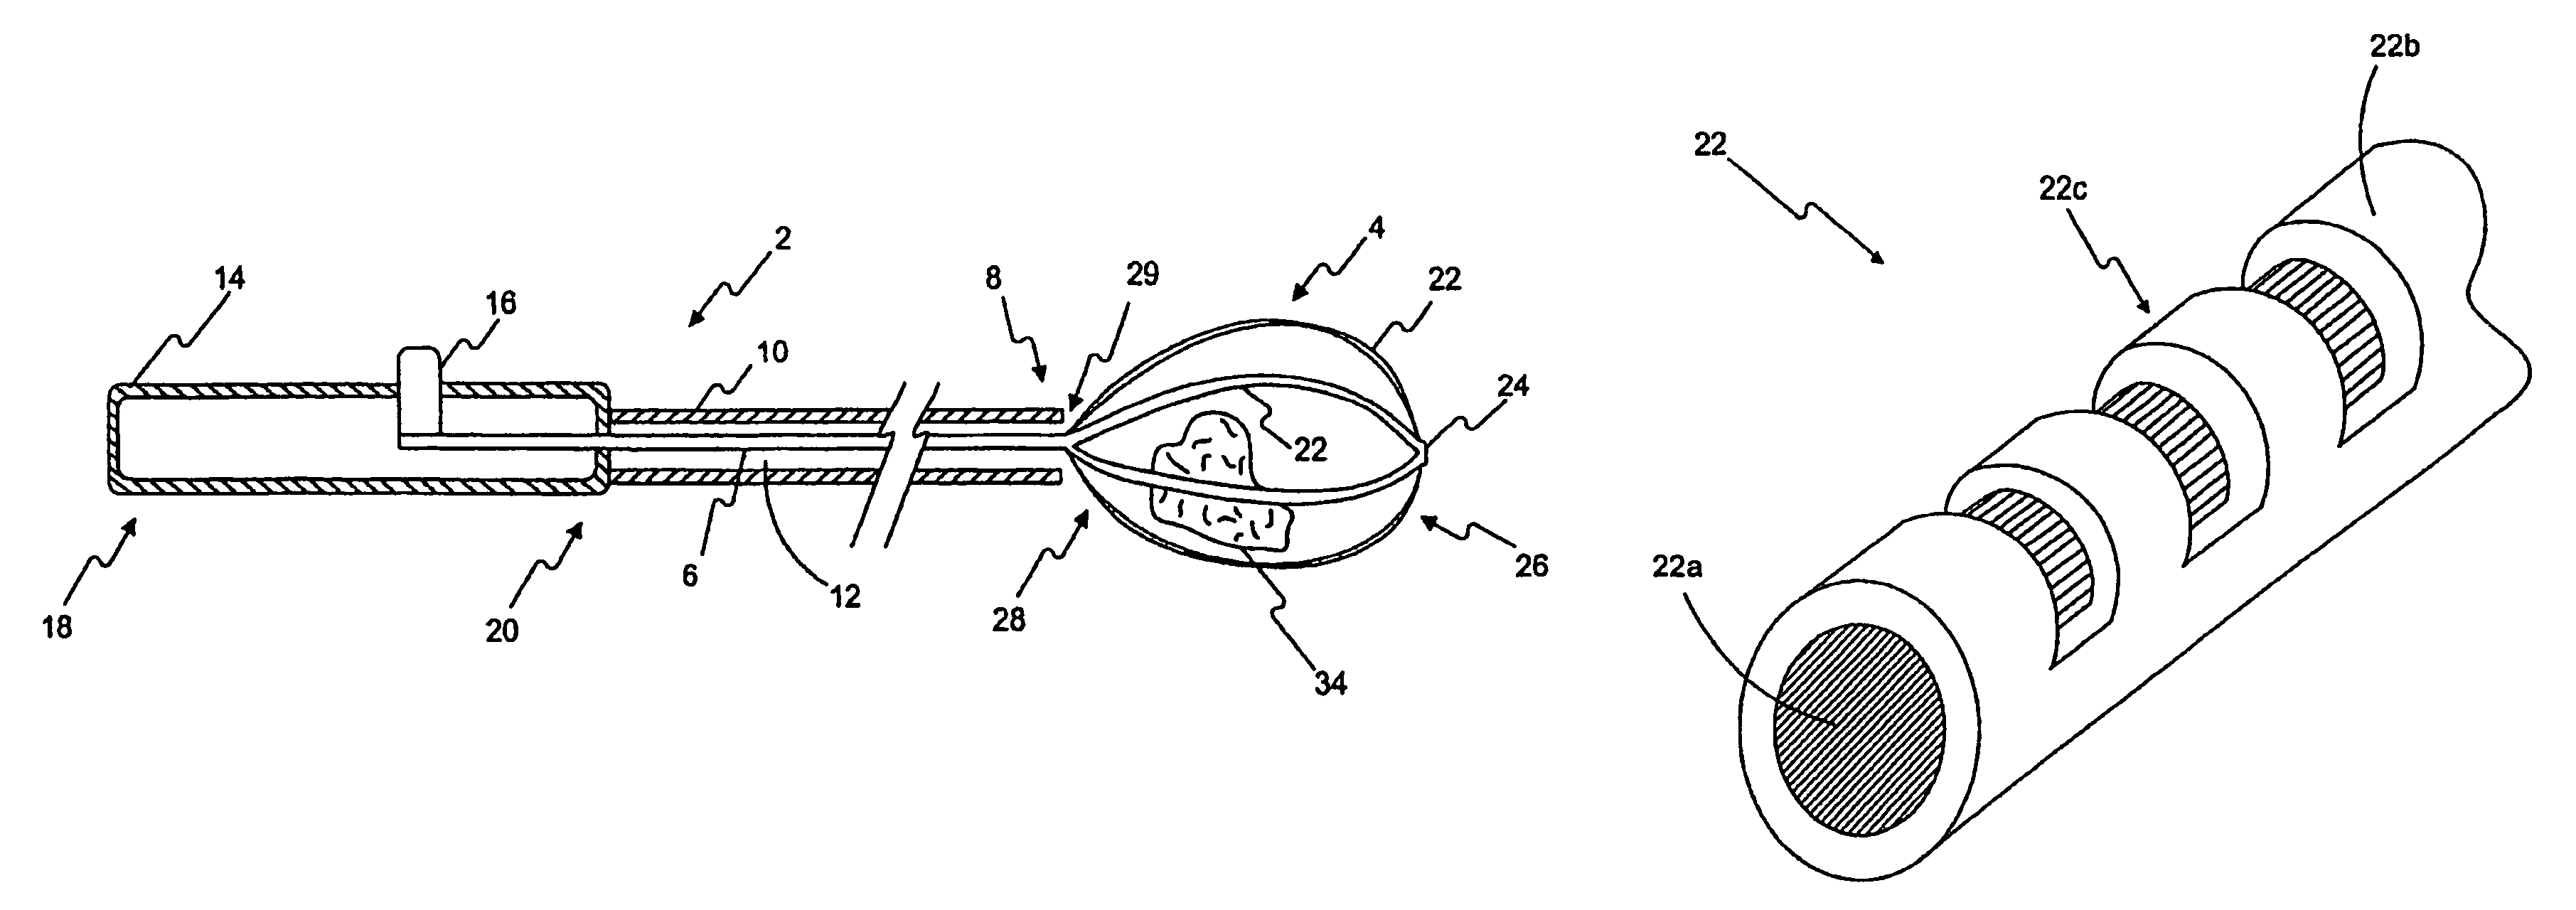 Laser-resistant basket